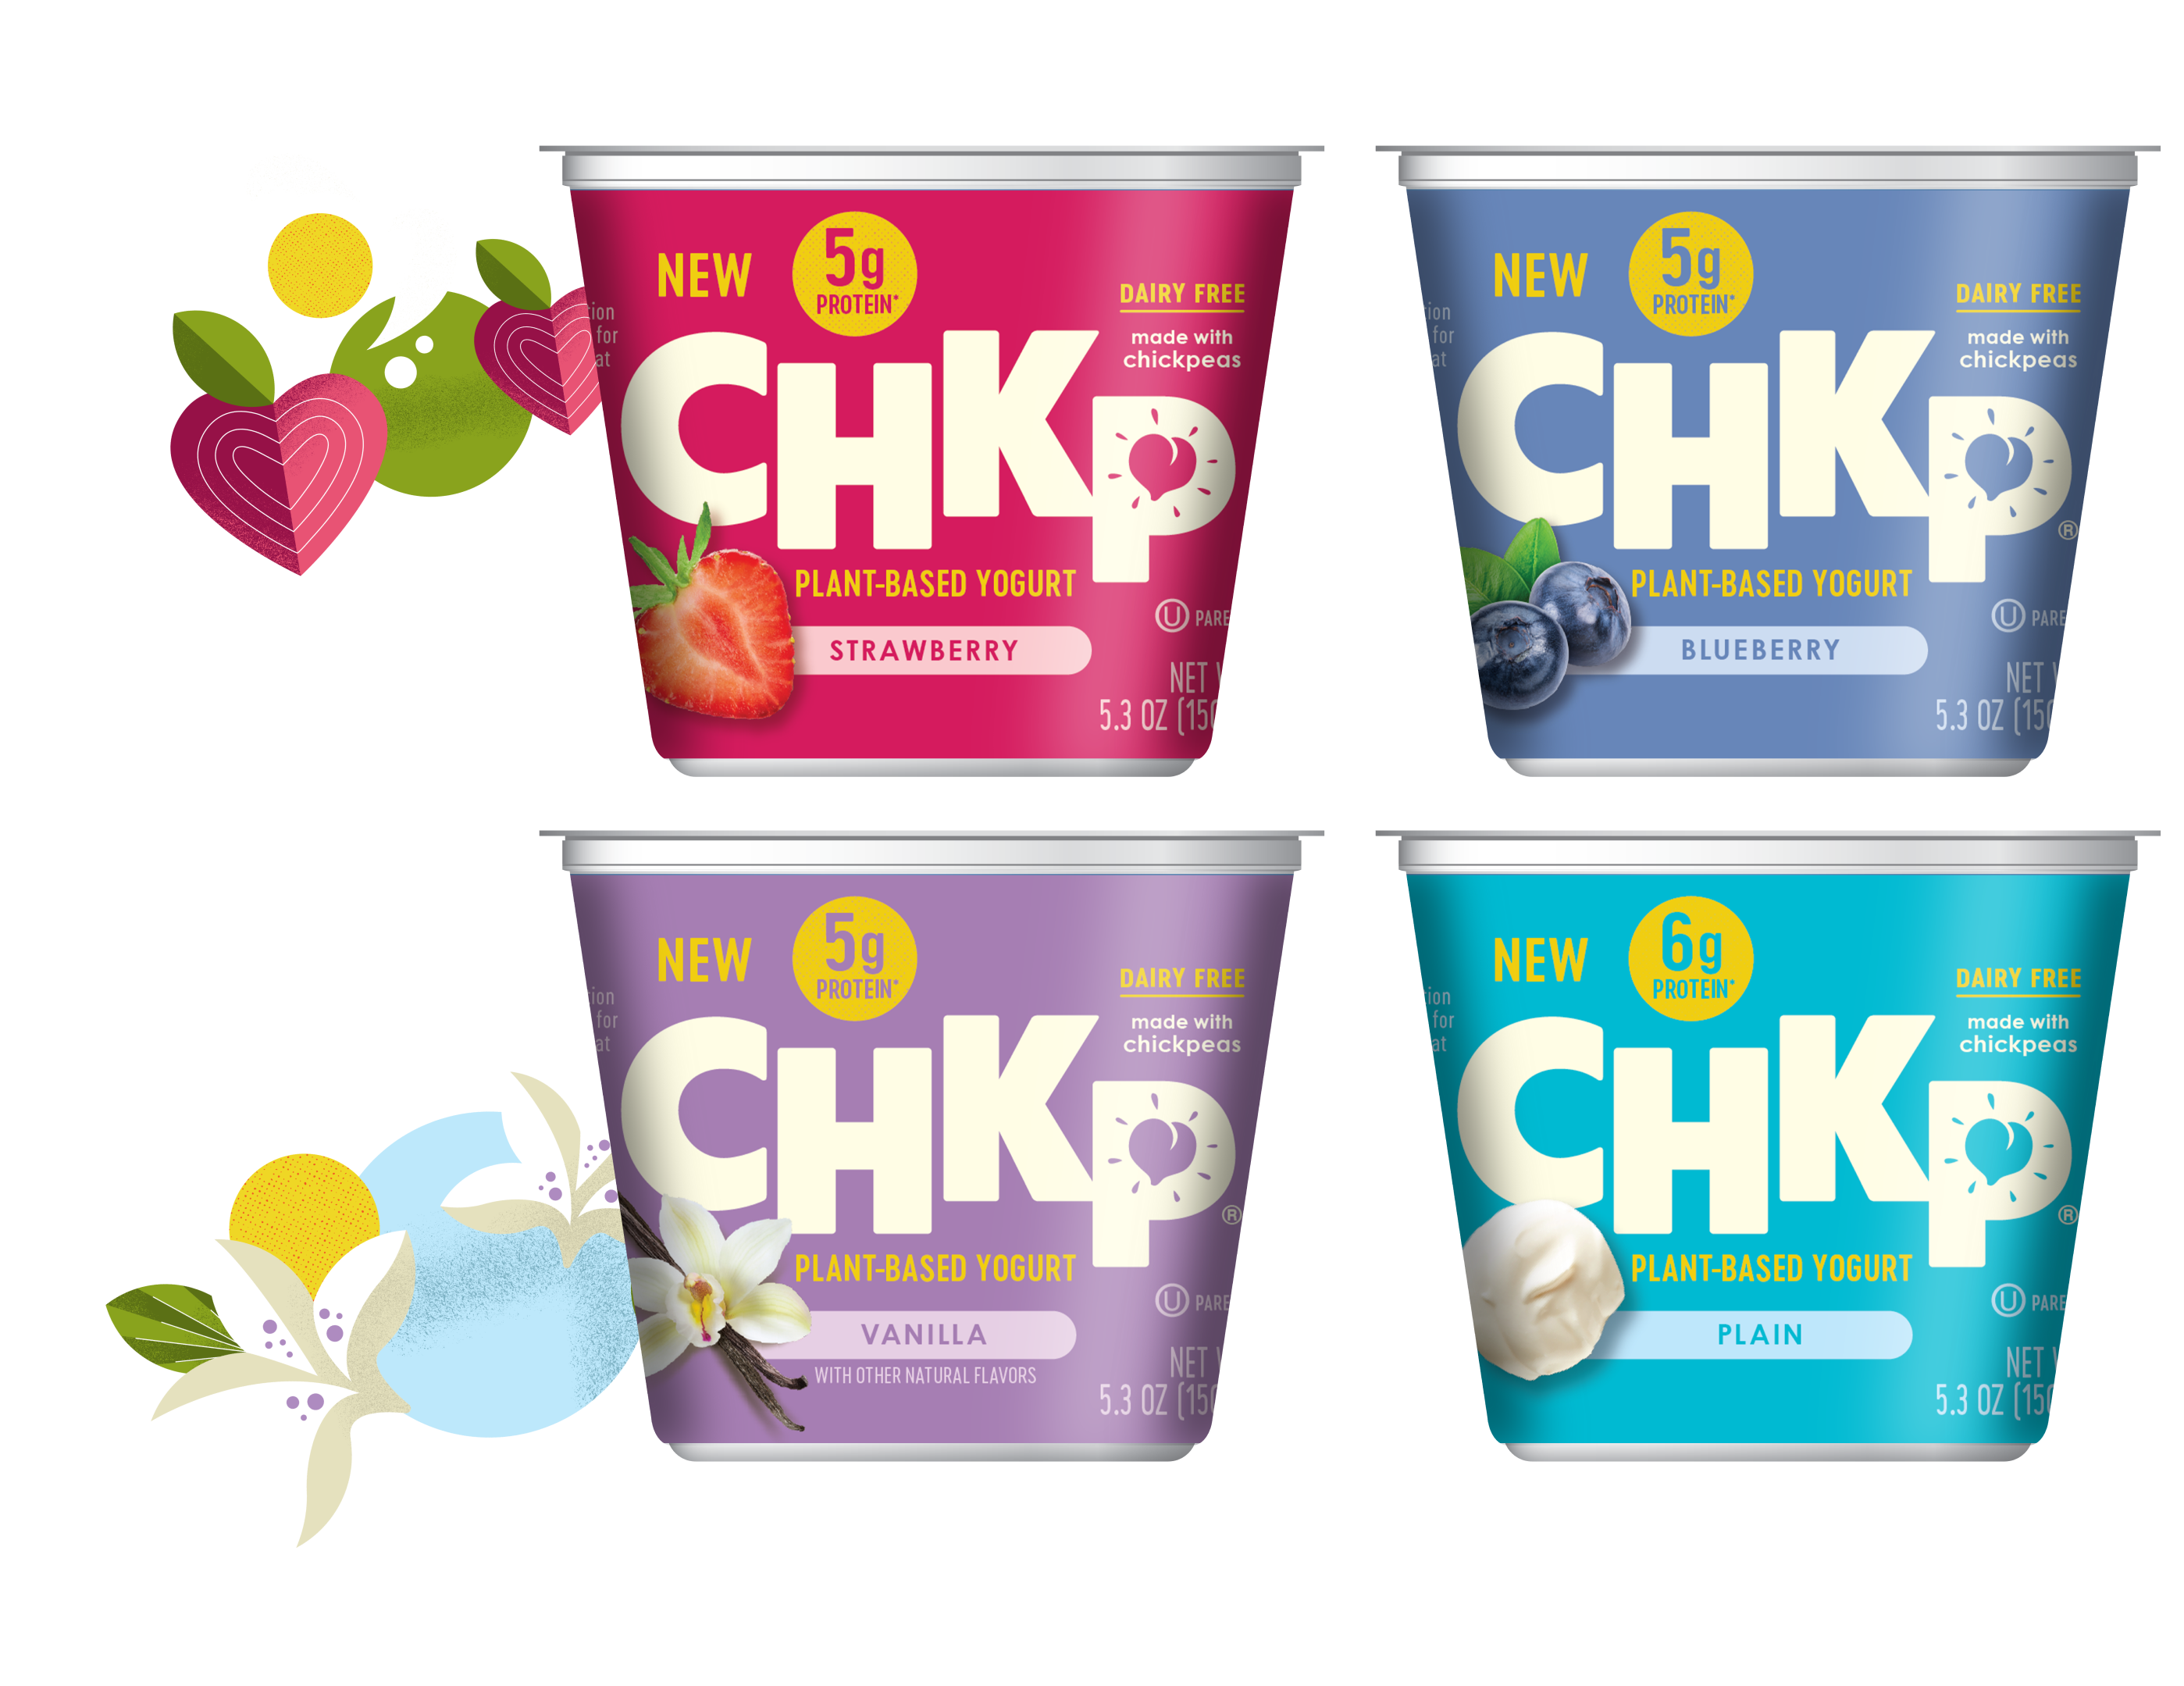 FREE CHKP Plant-Based Yogurt